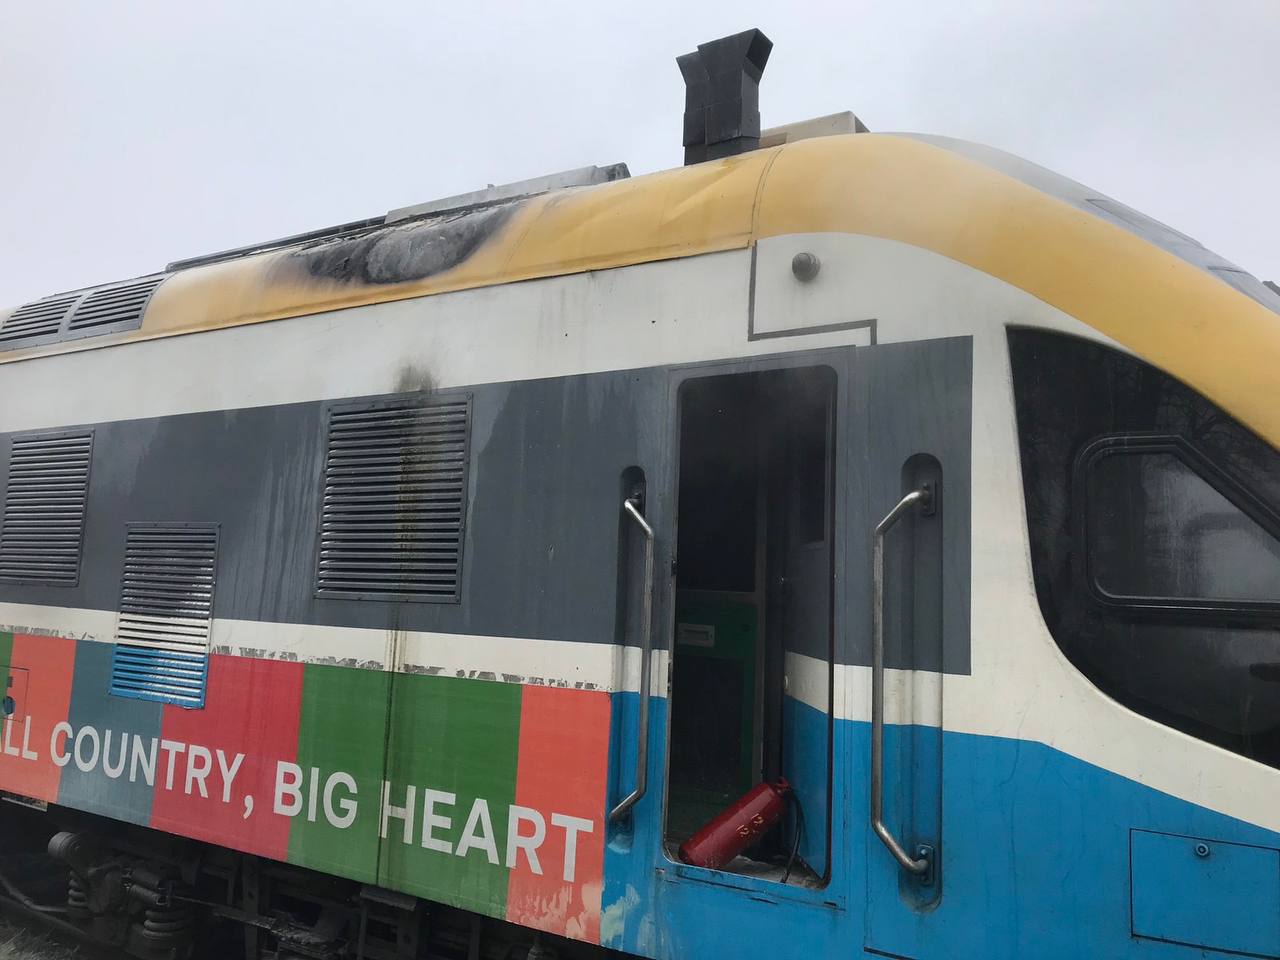 (ФОТО) В Каларашском районе загорелся пассажирский поезд Кишинев-Яссы